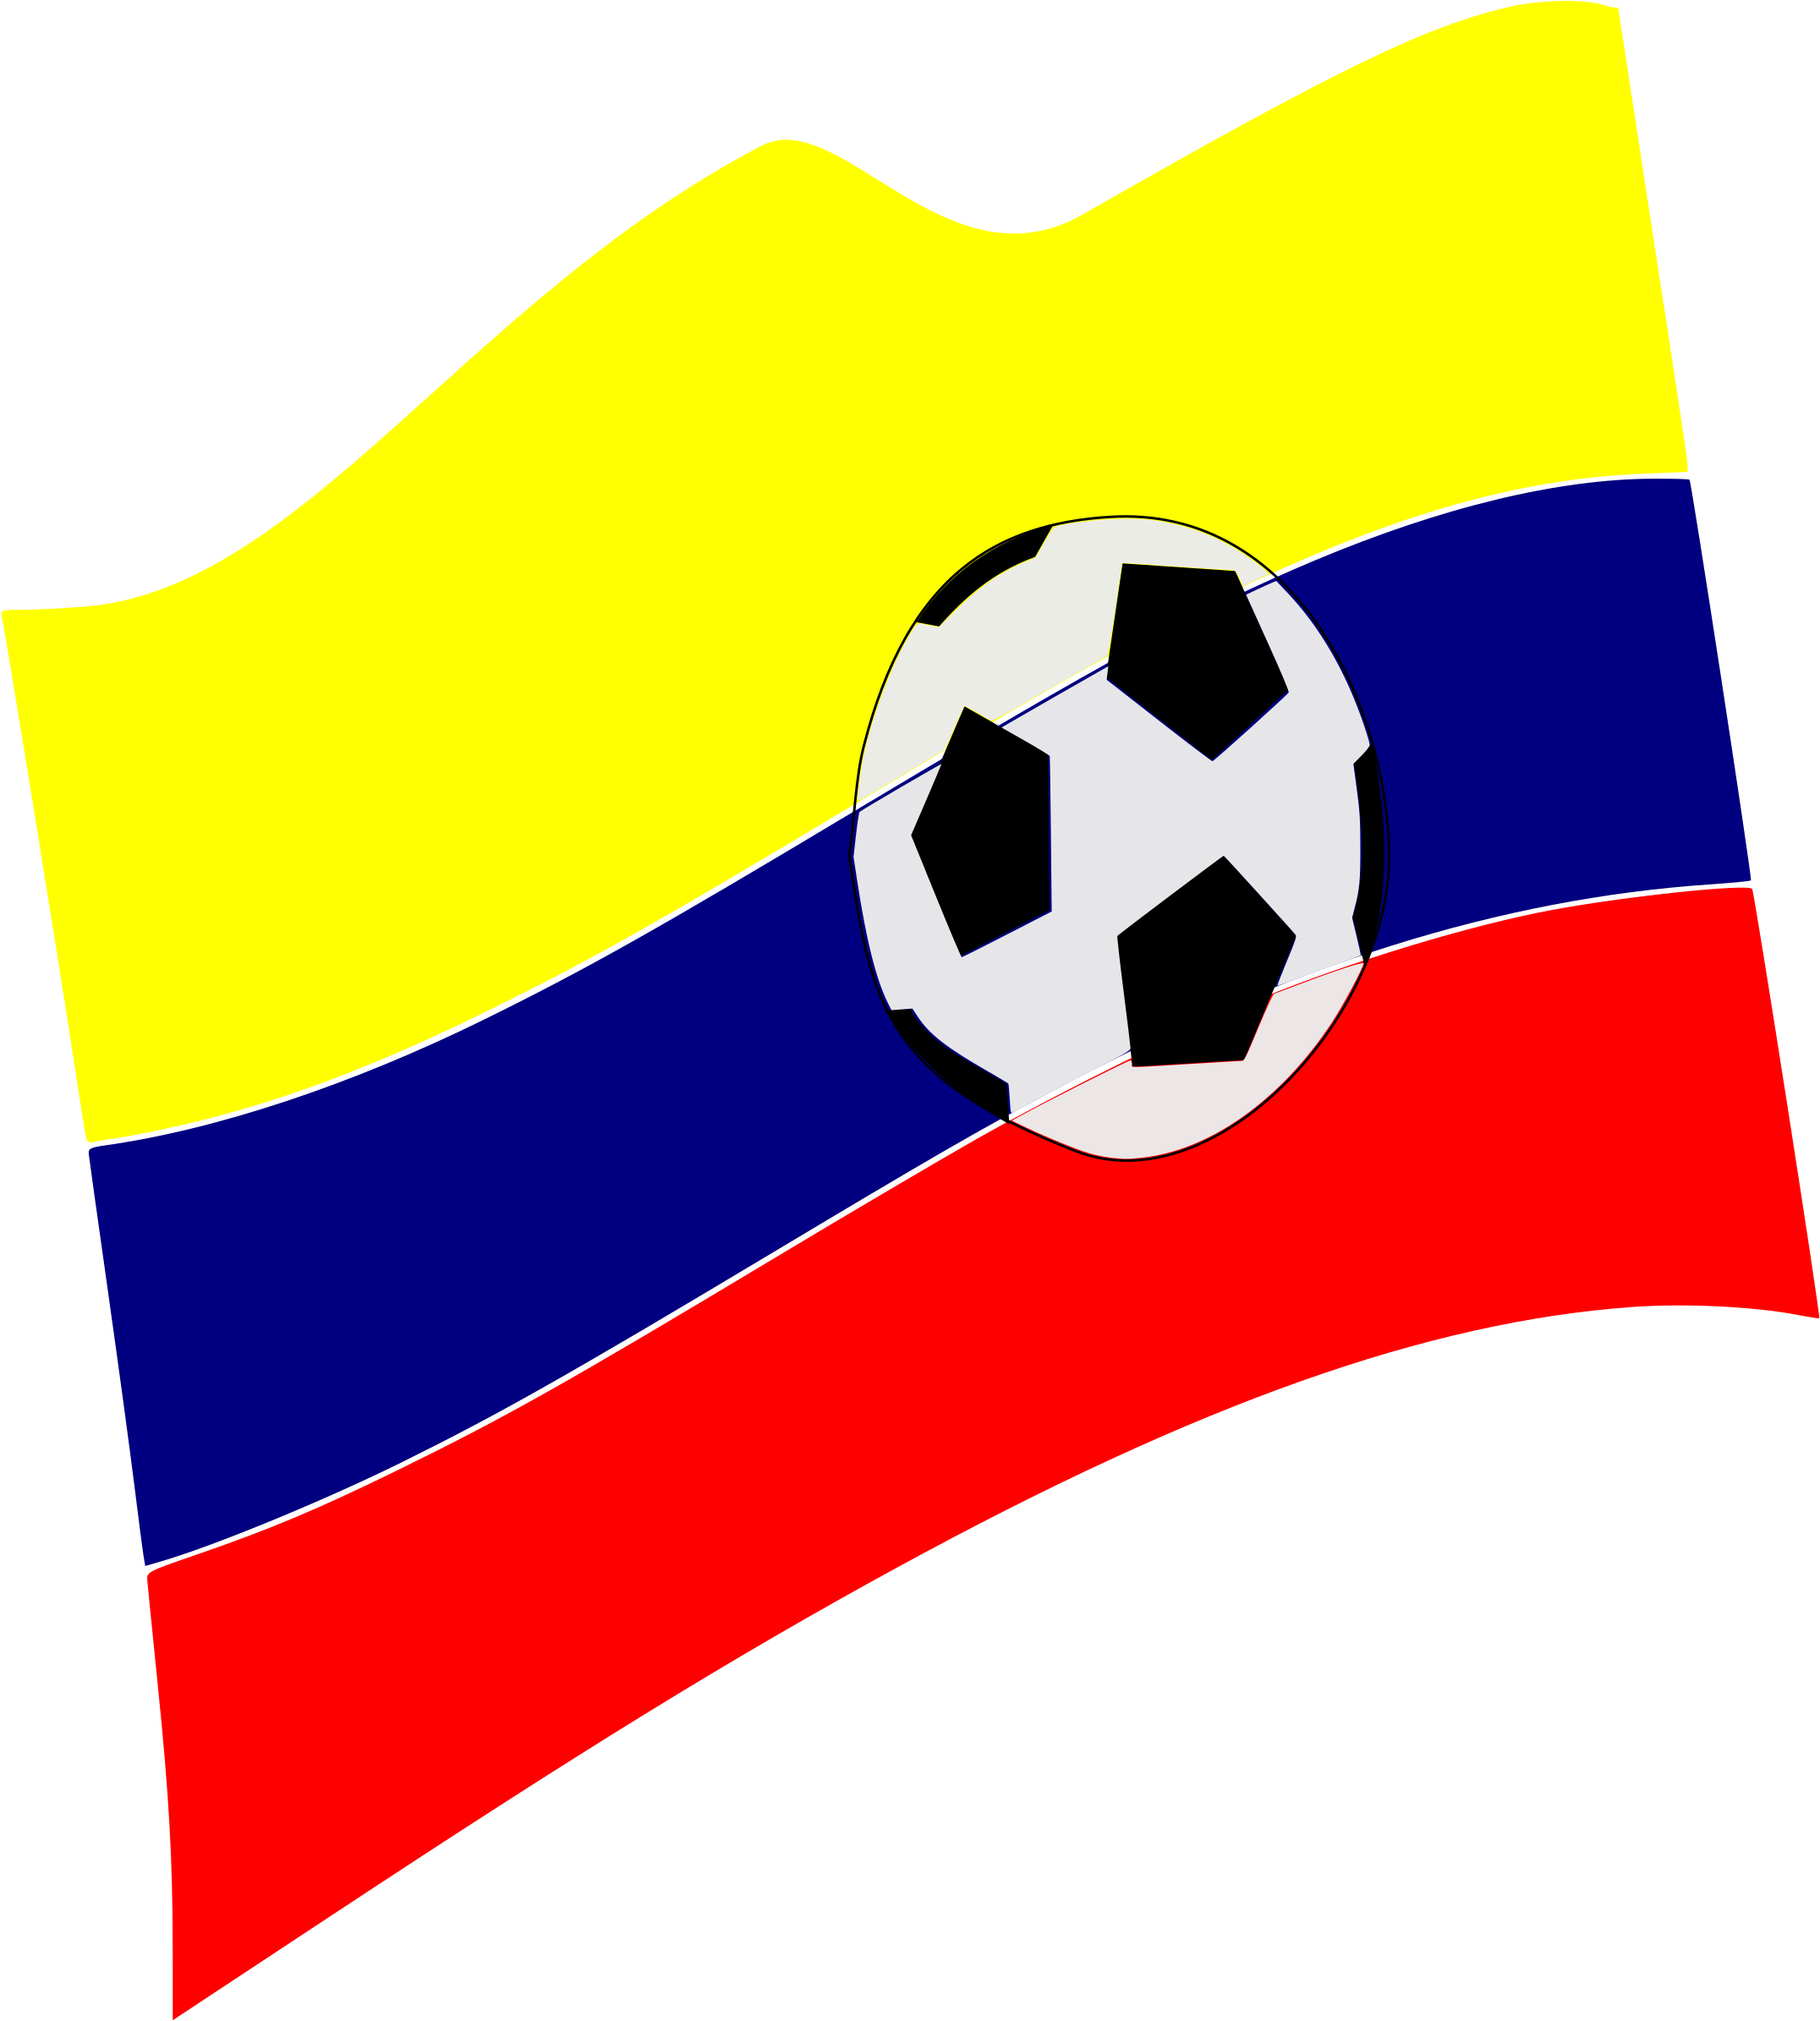 Big Image - Bandera De Colombia Y Balon (2159x2400)